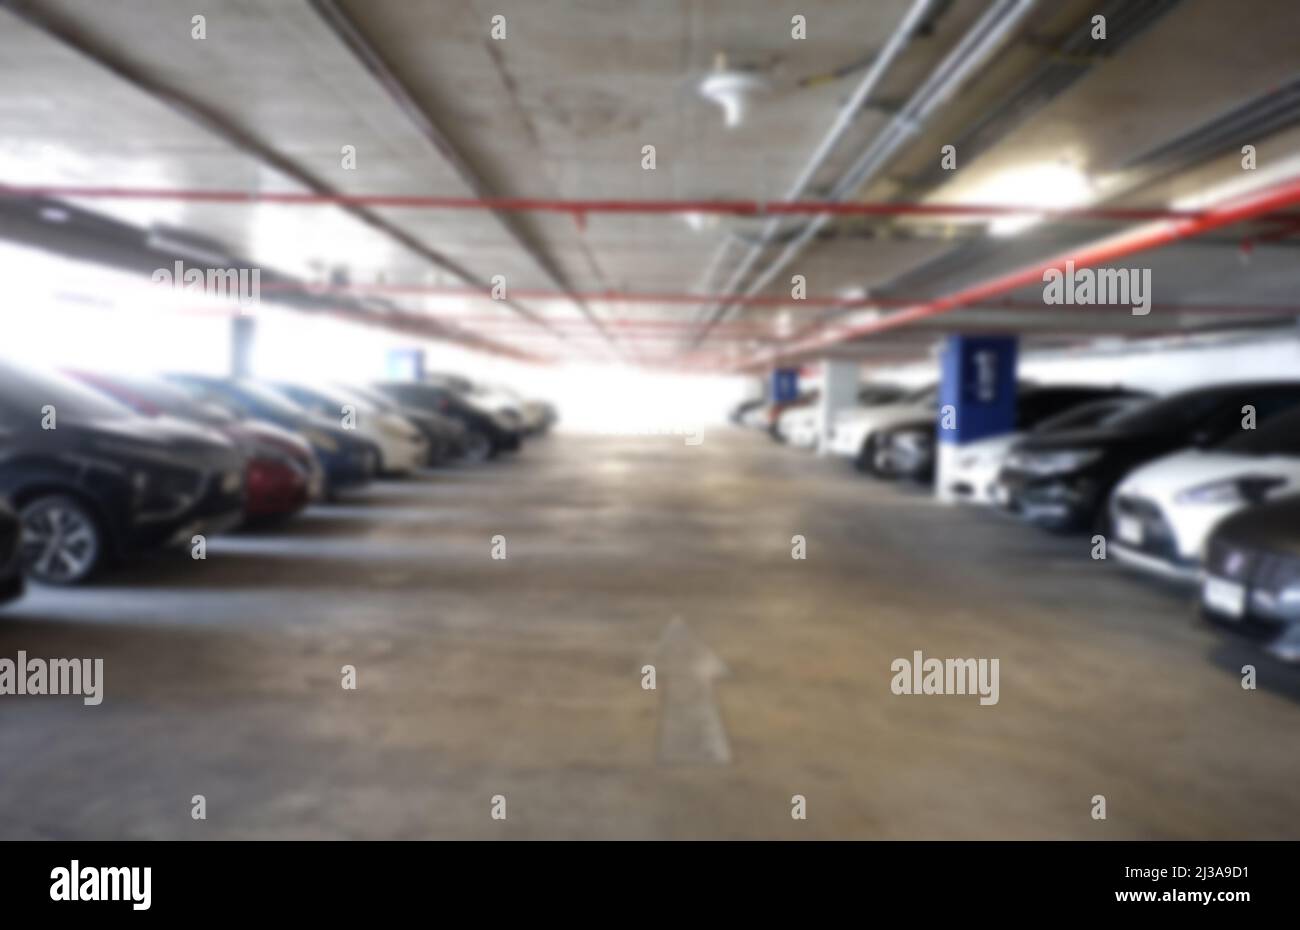 El fondo de aparcamiento para coches difuminado ofrece un diseño en tu trabajo. Foto de stock